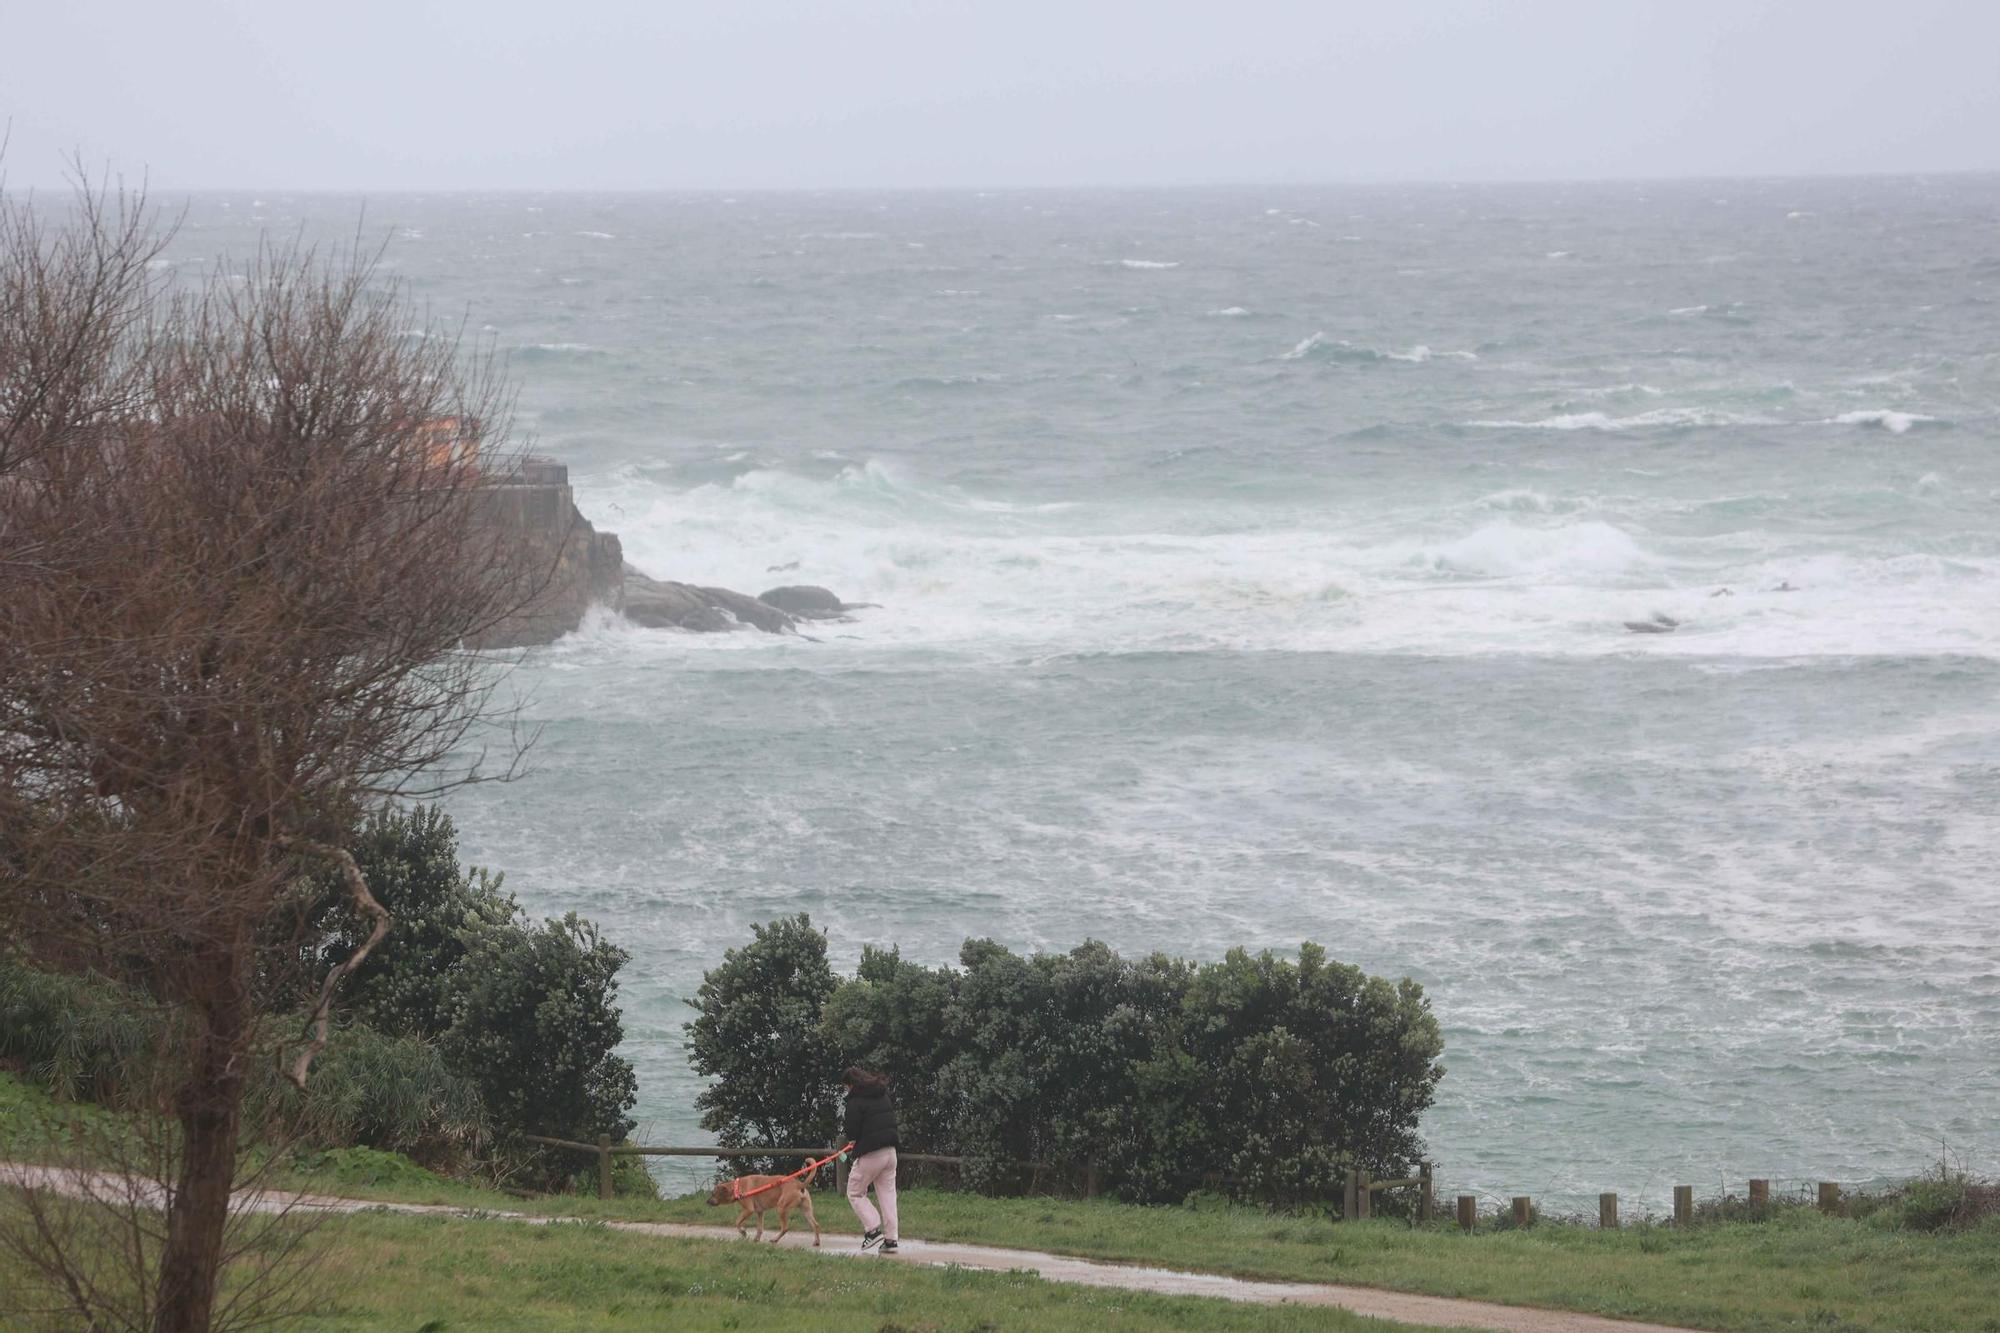 Alerta naranja en A Coruña por temporal costero en todo el litoral gallego